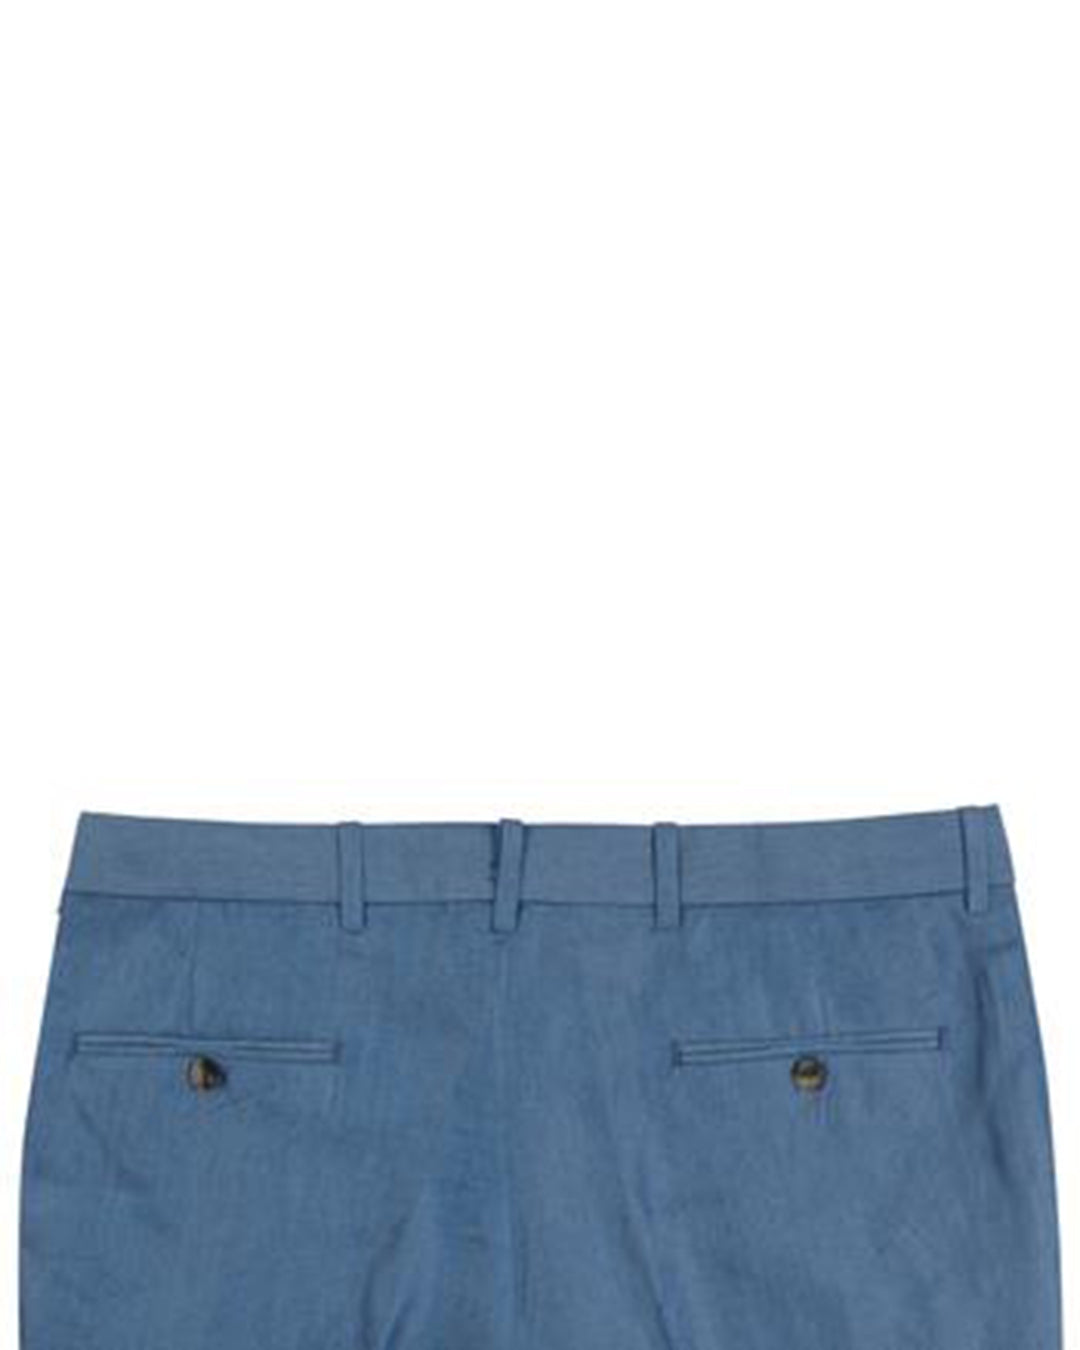 Blue Plain Cotton Pants